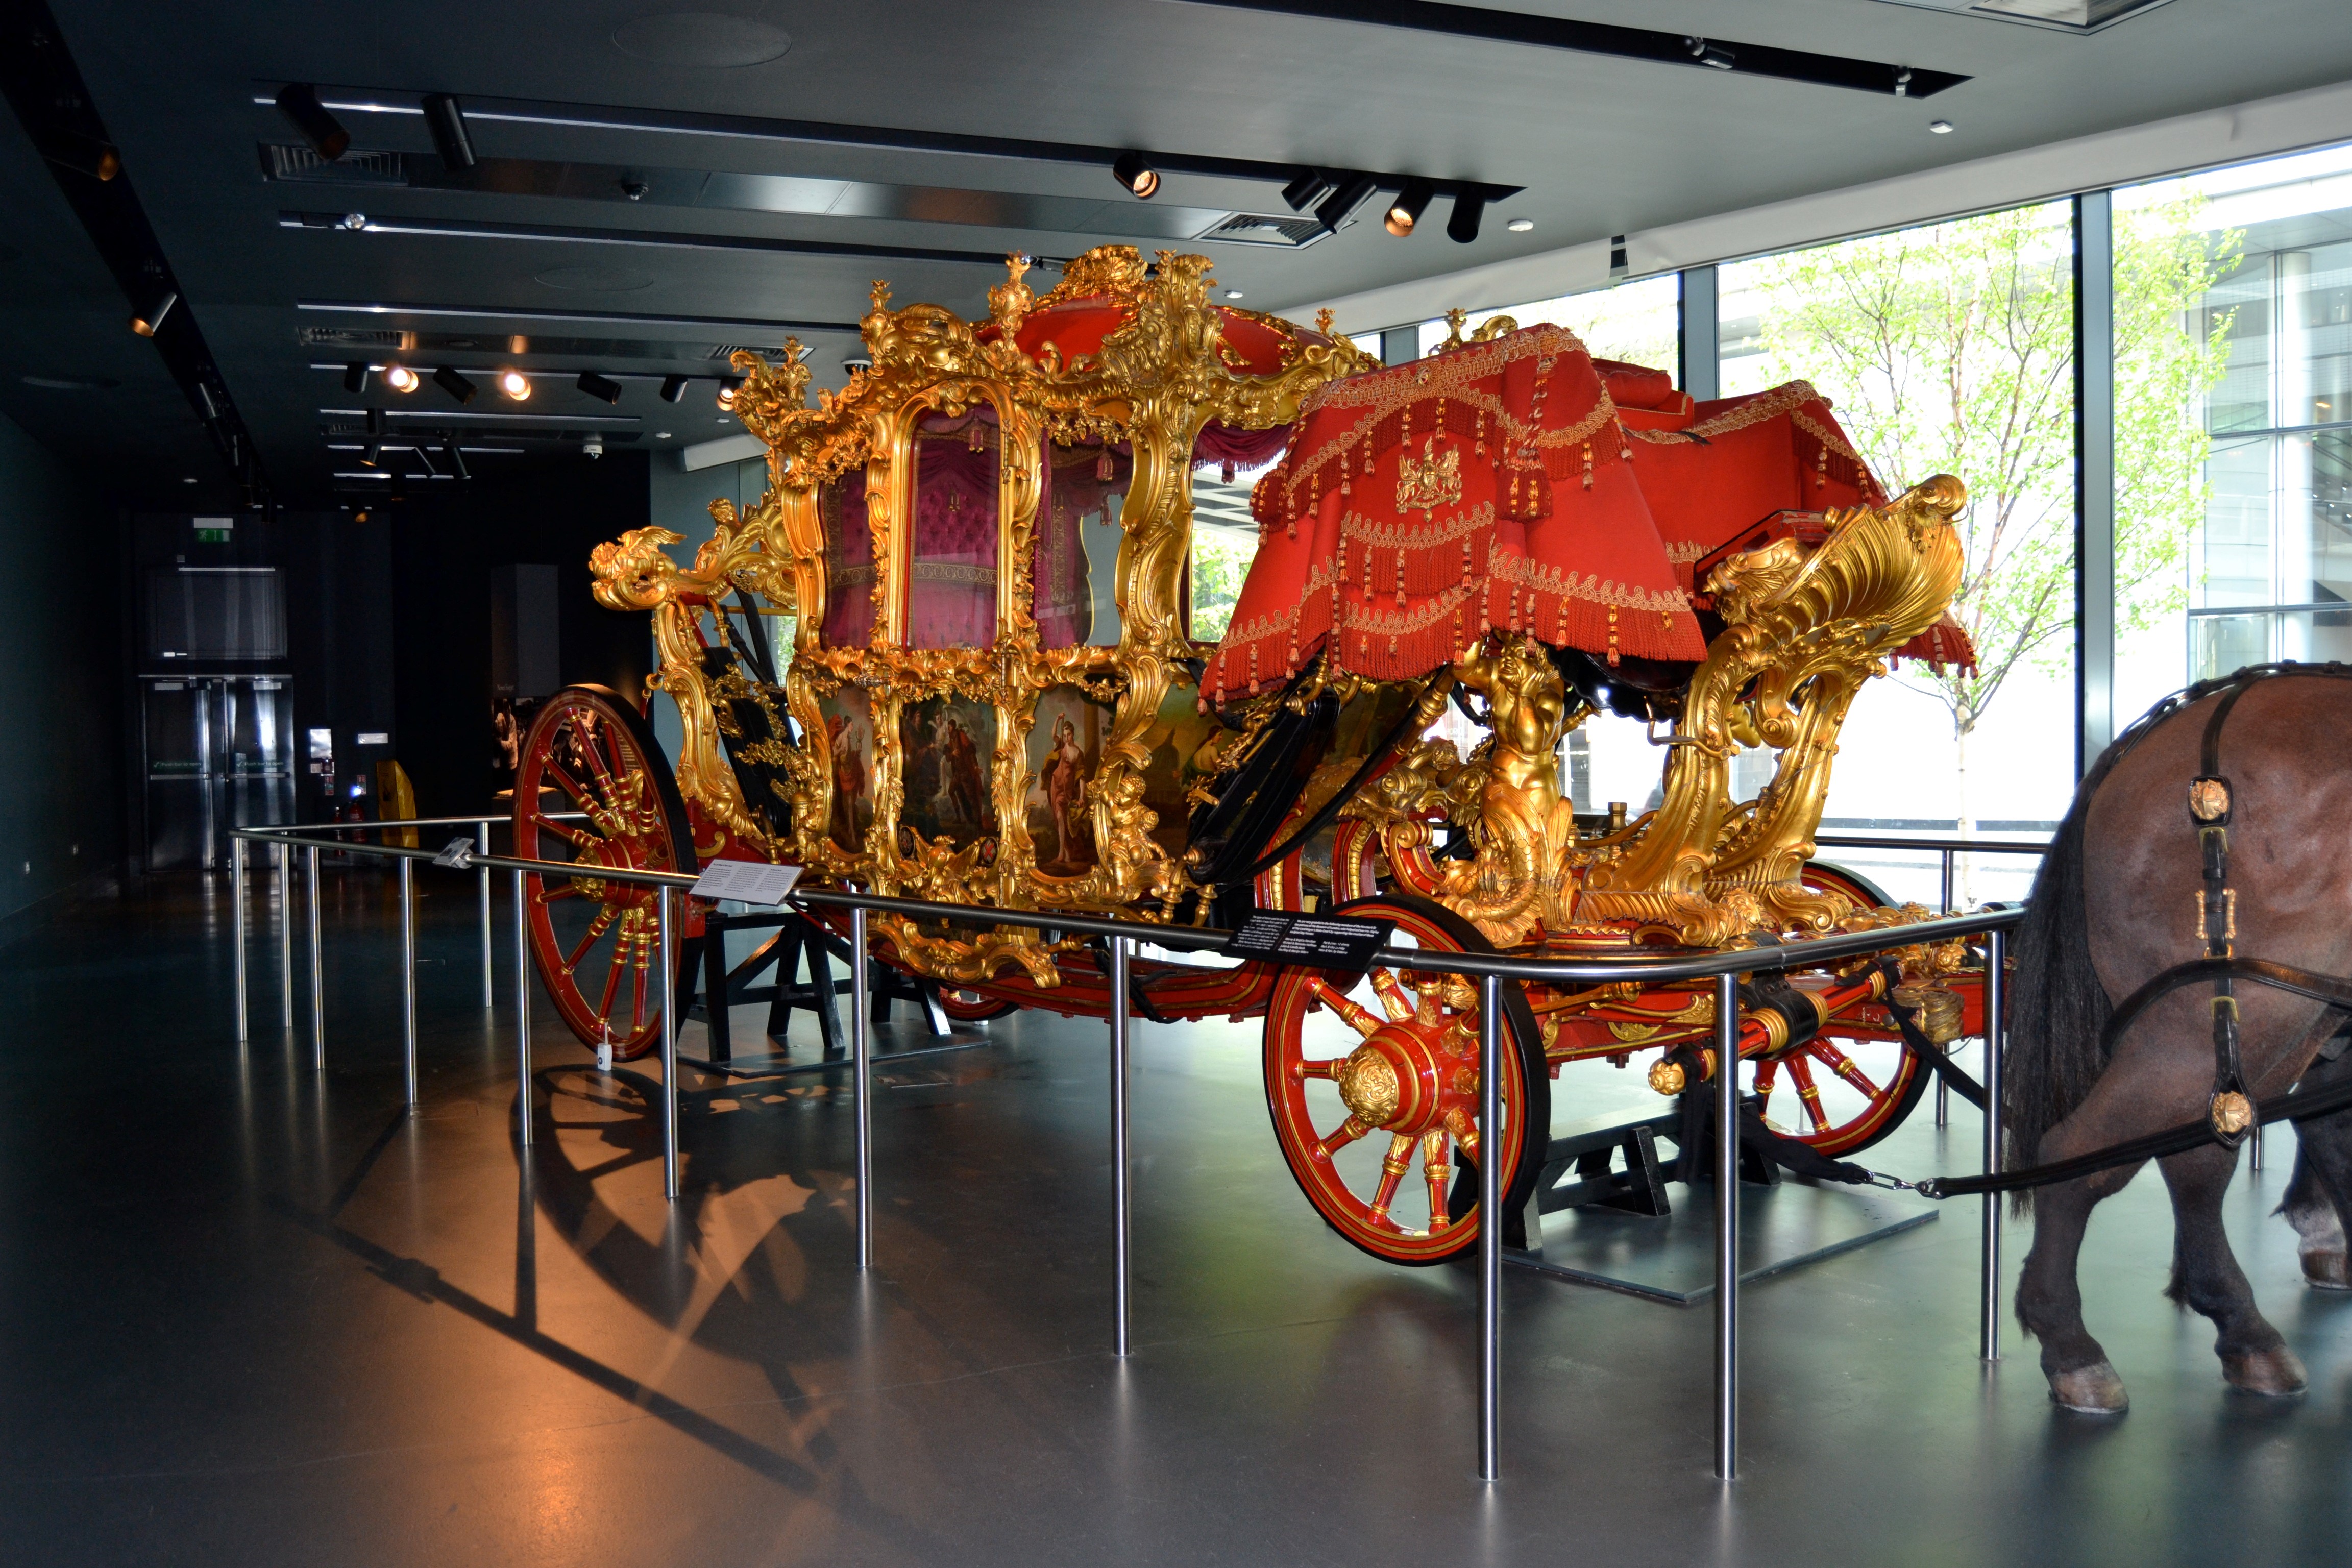 Lord Mayor's State Coach – den to tonn tunge vognen fra 1757 – gir en ny dimensjon til uttrykket “bling”. Foto: Turid Lismoen. 